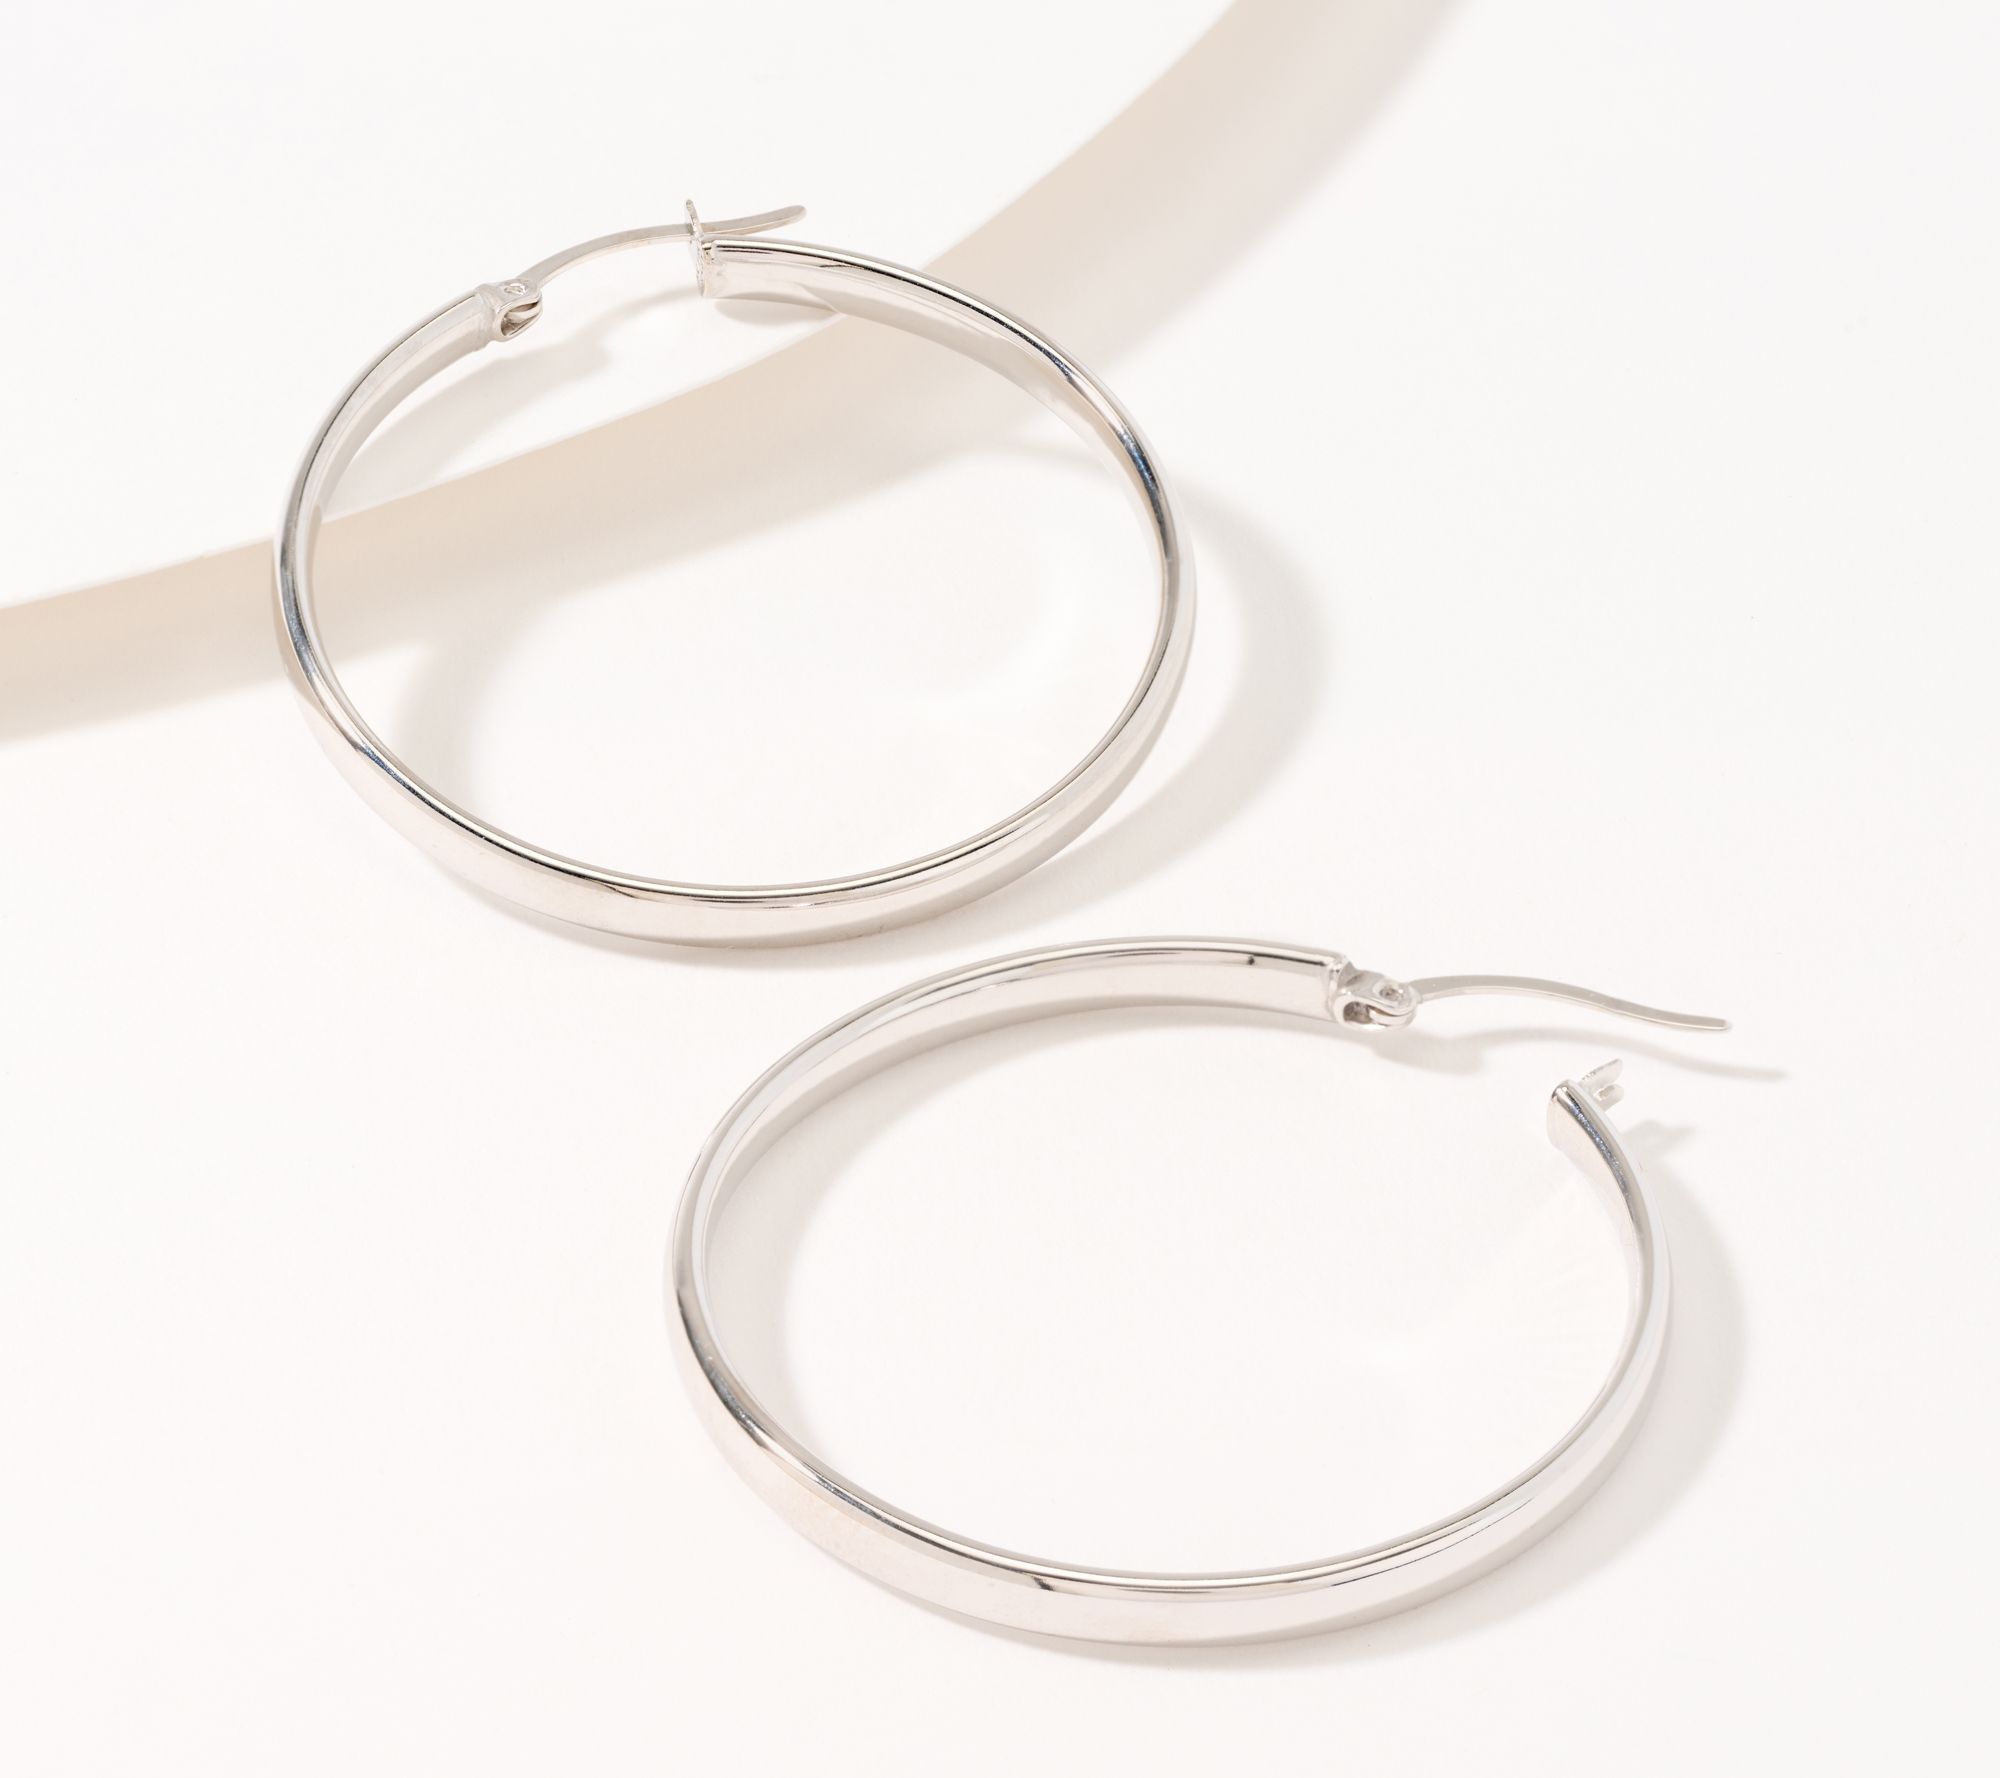 Accessorize London Women's Silver Medium Simple Hoop Earring